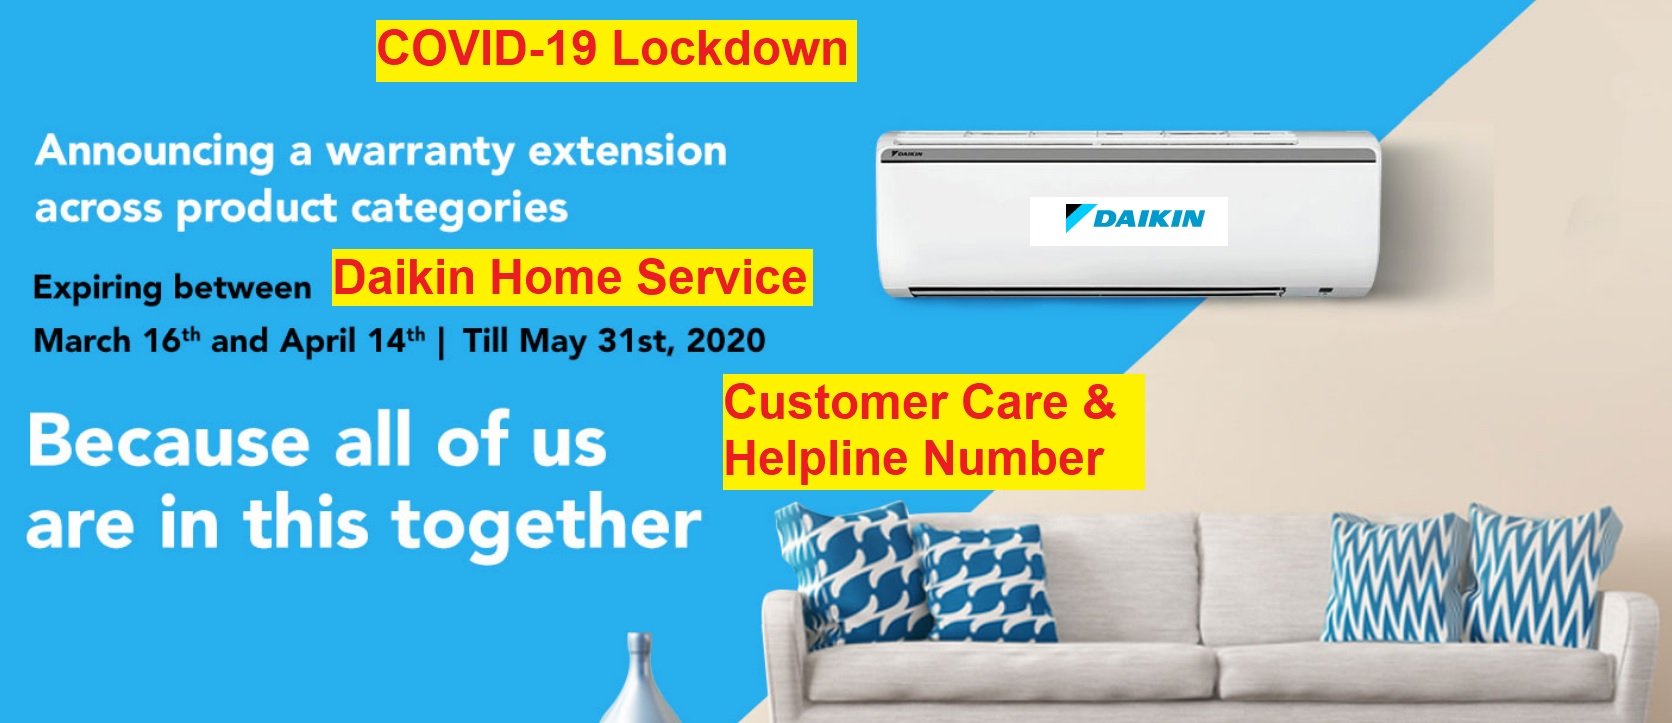 daikin home service customer care